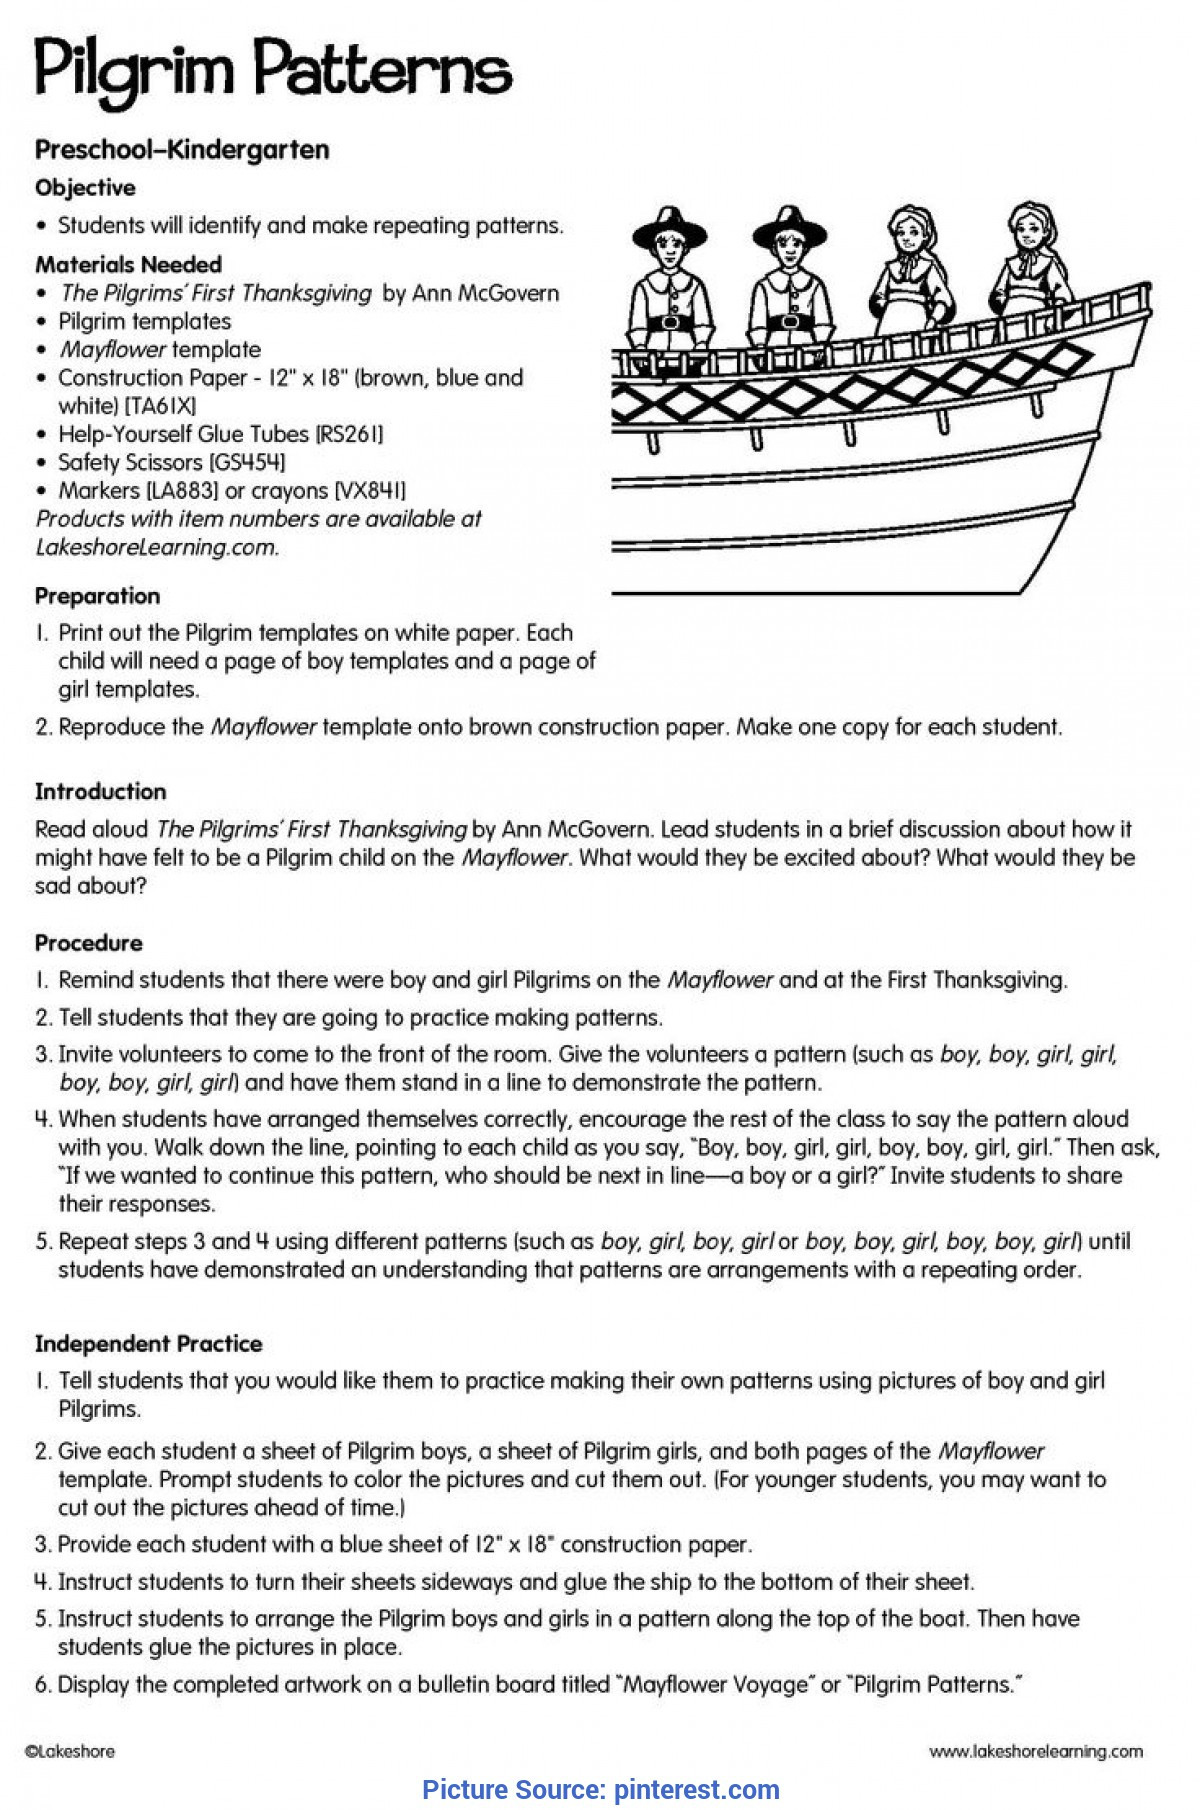 Thanksgiving Lesson Plans for Kindergarten Simple Lesson Plans for Preschool About Thanksgiving 51